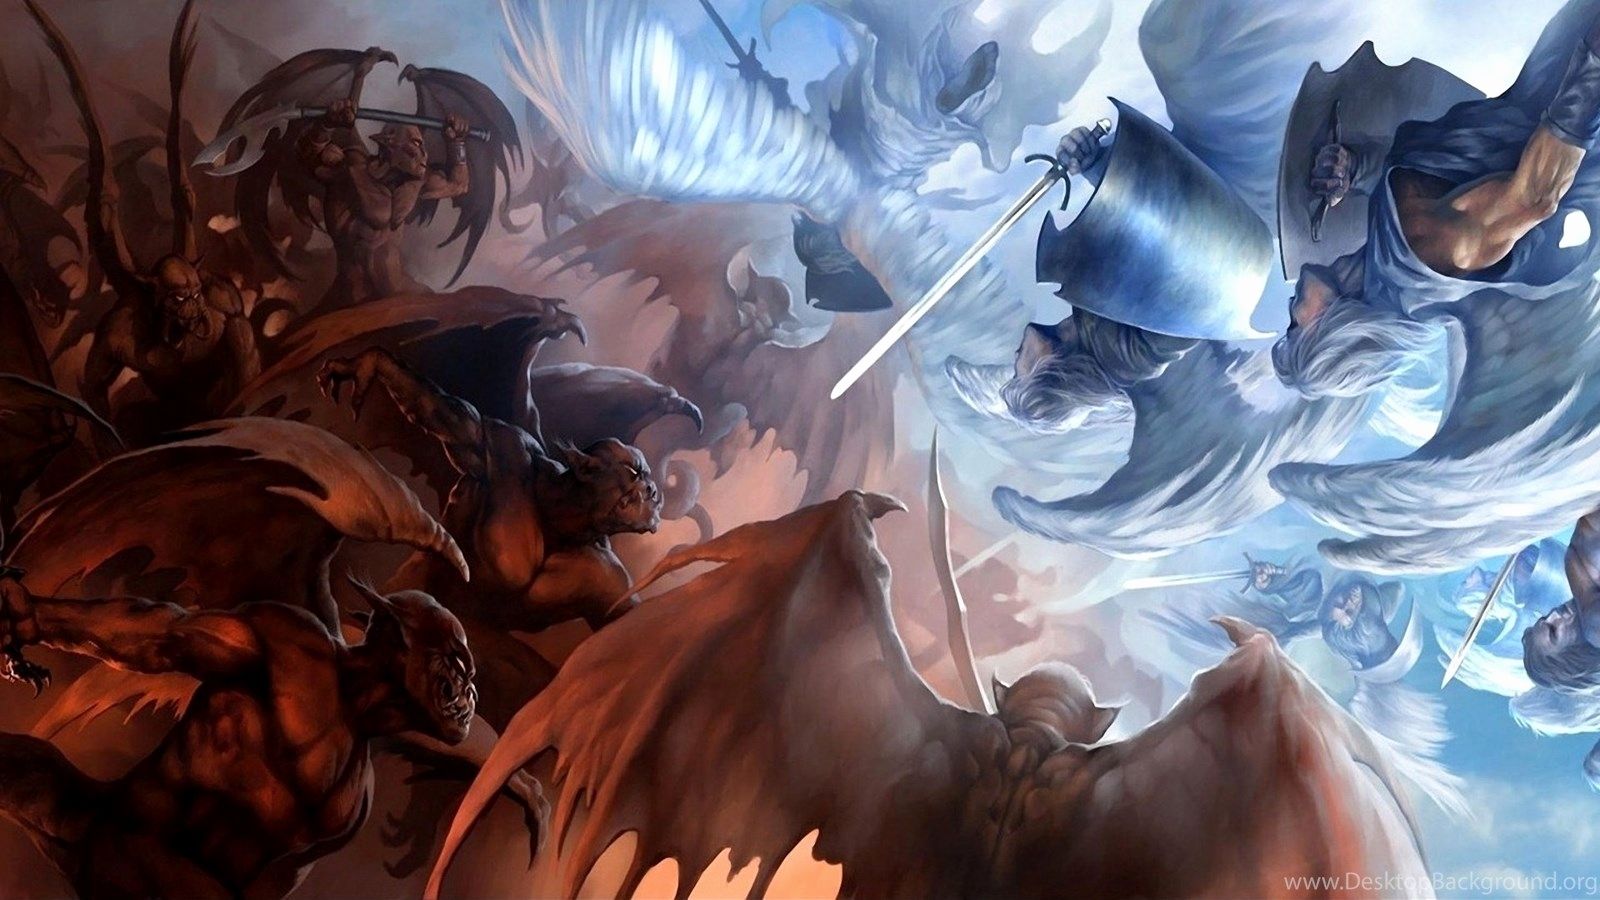 Image Of Anime Fight Best Of Wallpaper Demons Angels Vs Anime Devil Fight God Full HD Desktop Background Of the Day of The Hudson